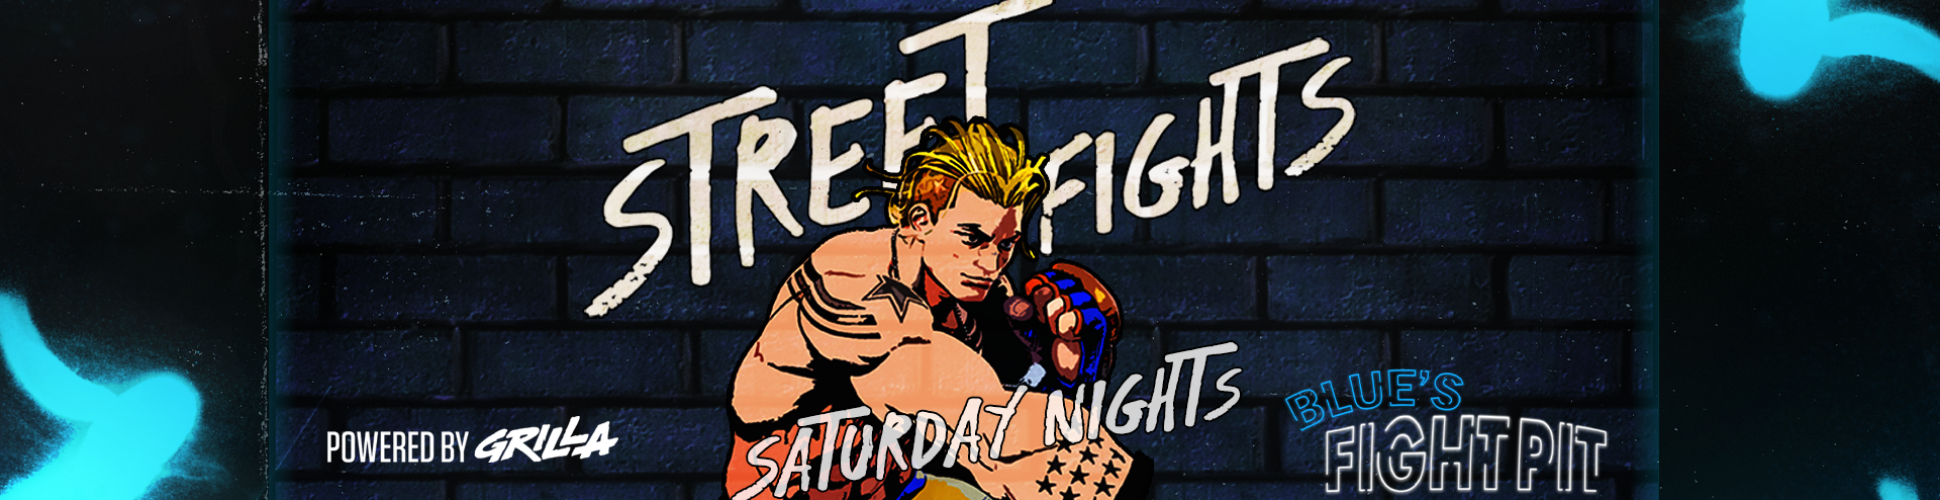 Blue's Fight Pit: Street Fights R4 Saturday Nights #23